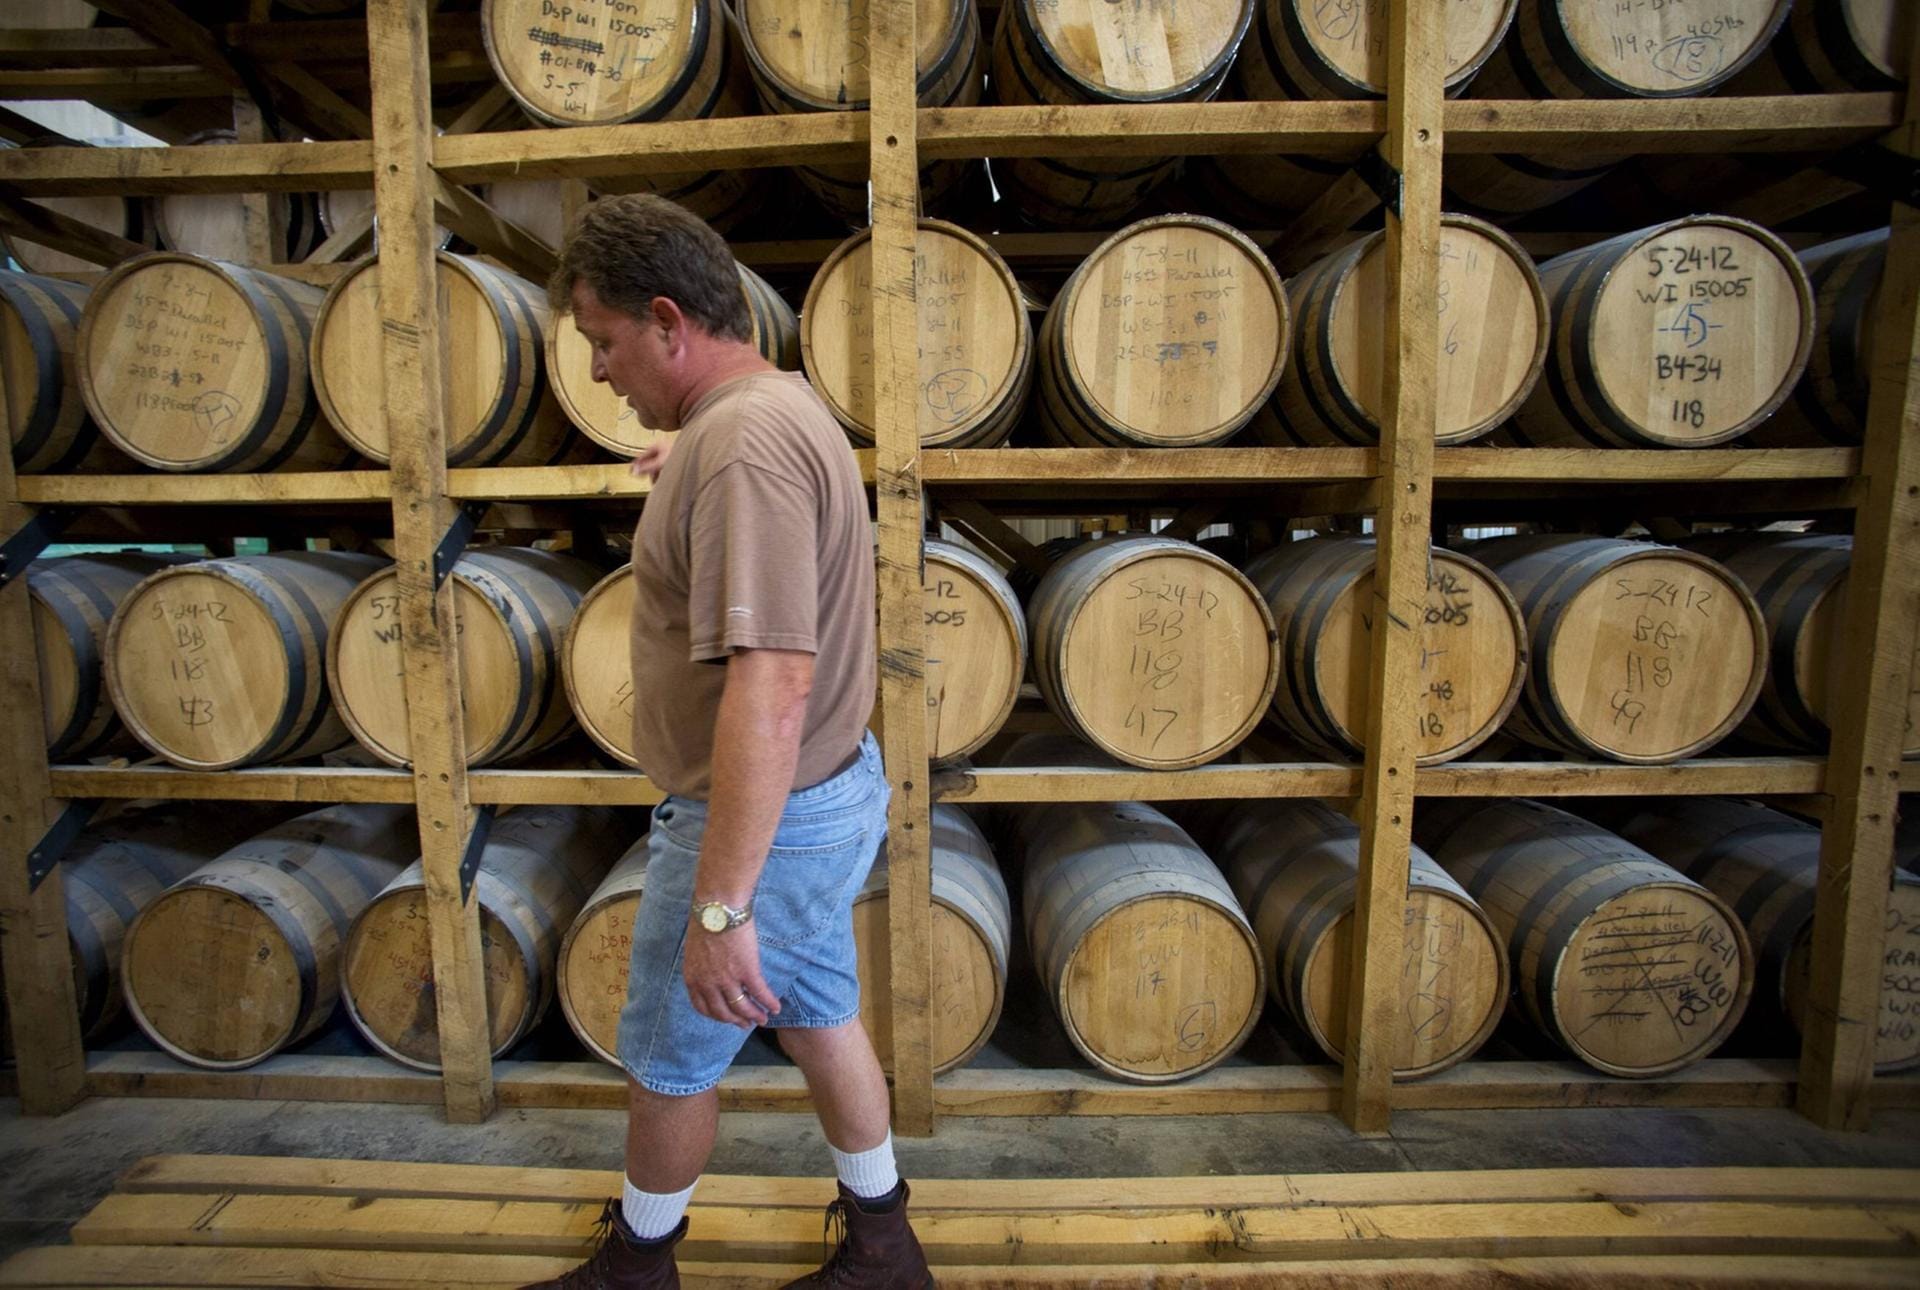 Die Reifezeit des Whiskys wird die vorgeschriebenen drei Jahre kaum überschritten haben. Die Fässer gehören ebenfalls zur billigsten Kategorie und sind in der Regel abgenutzt und geben kaum noch Aromen ab.